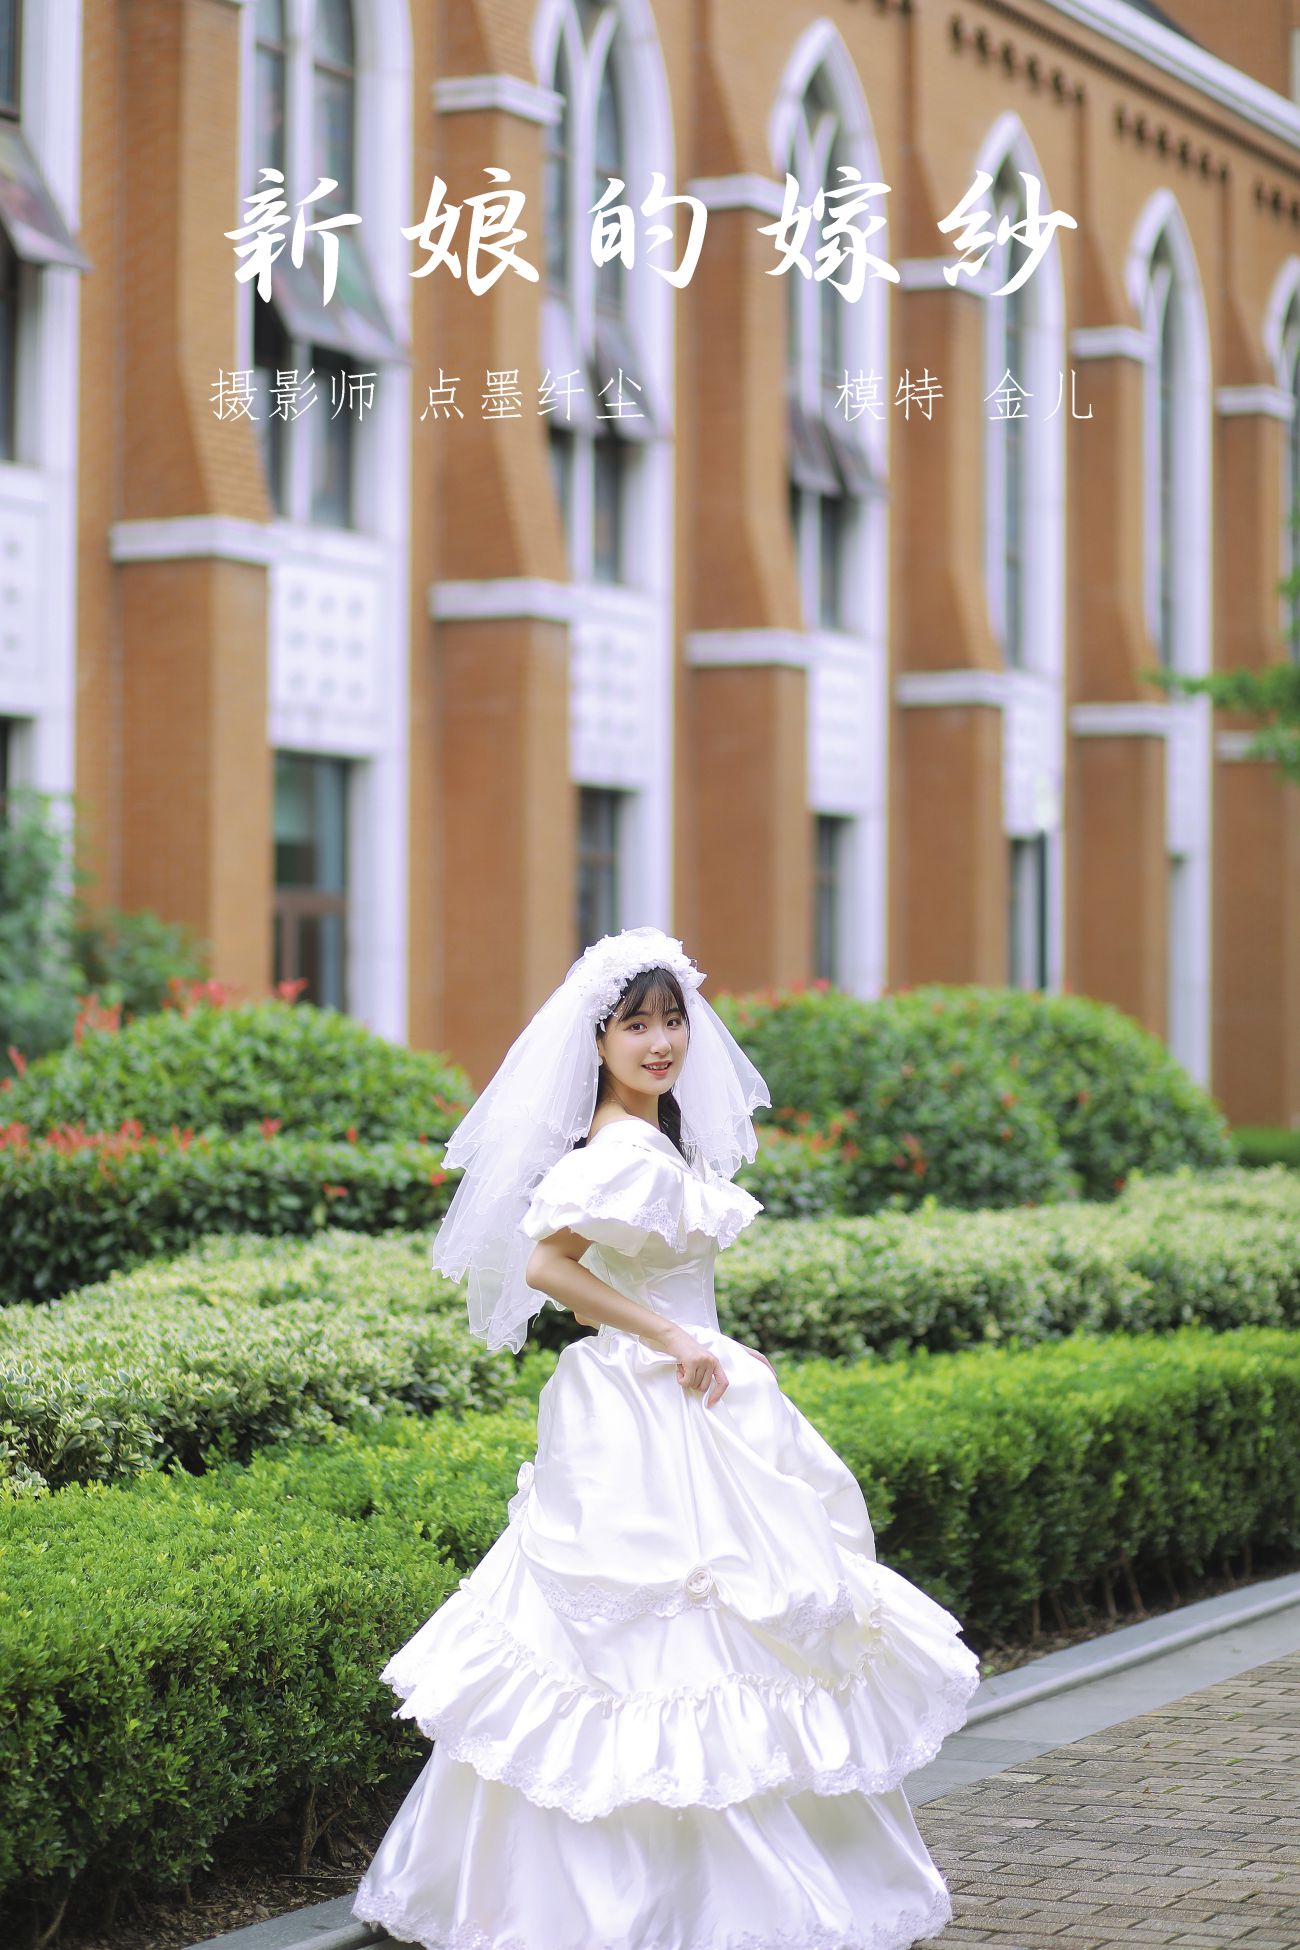 YITUYU艺图语模特唯美写真2021.11.08期新娘的嫁纱我是金儿呀 (28)